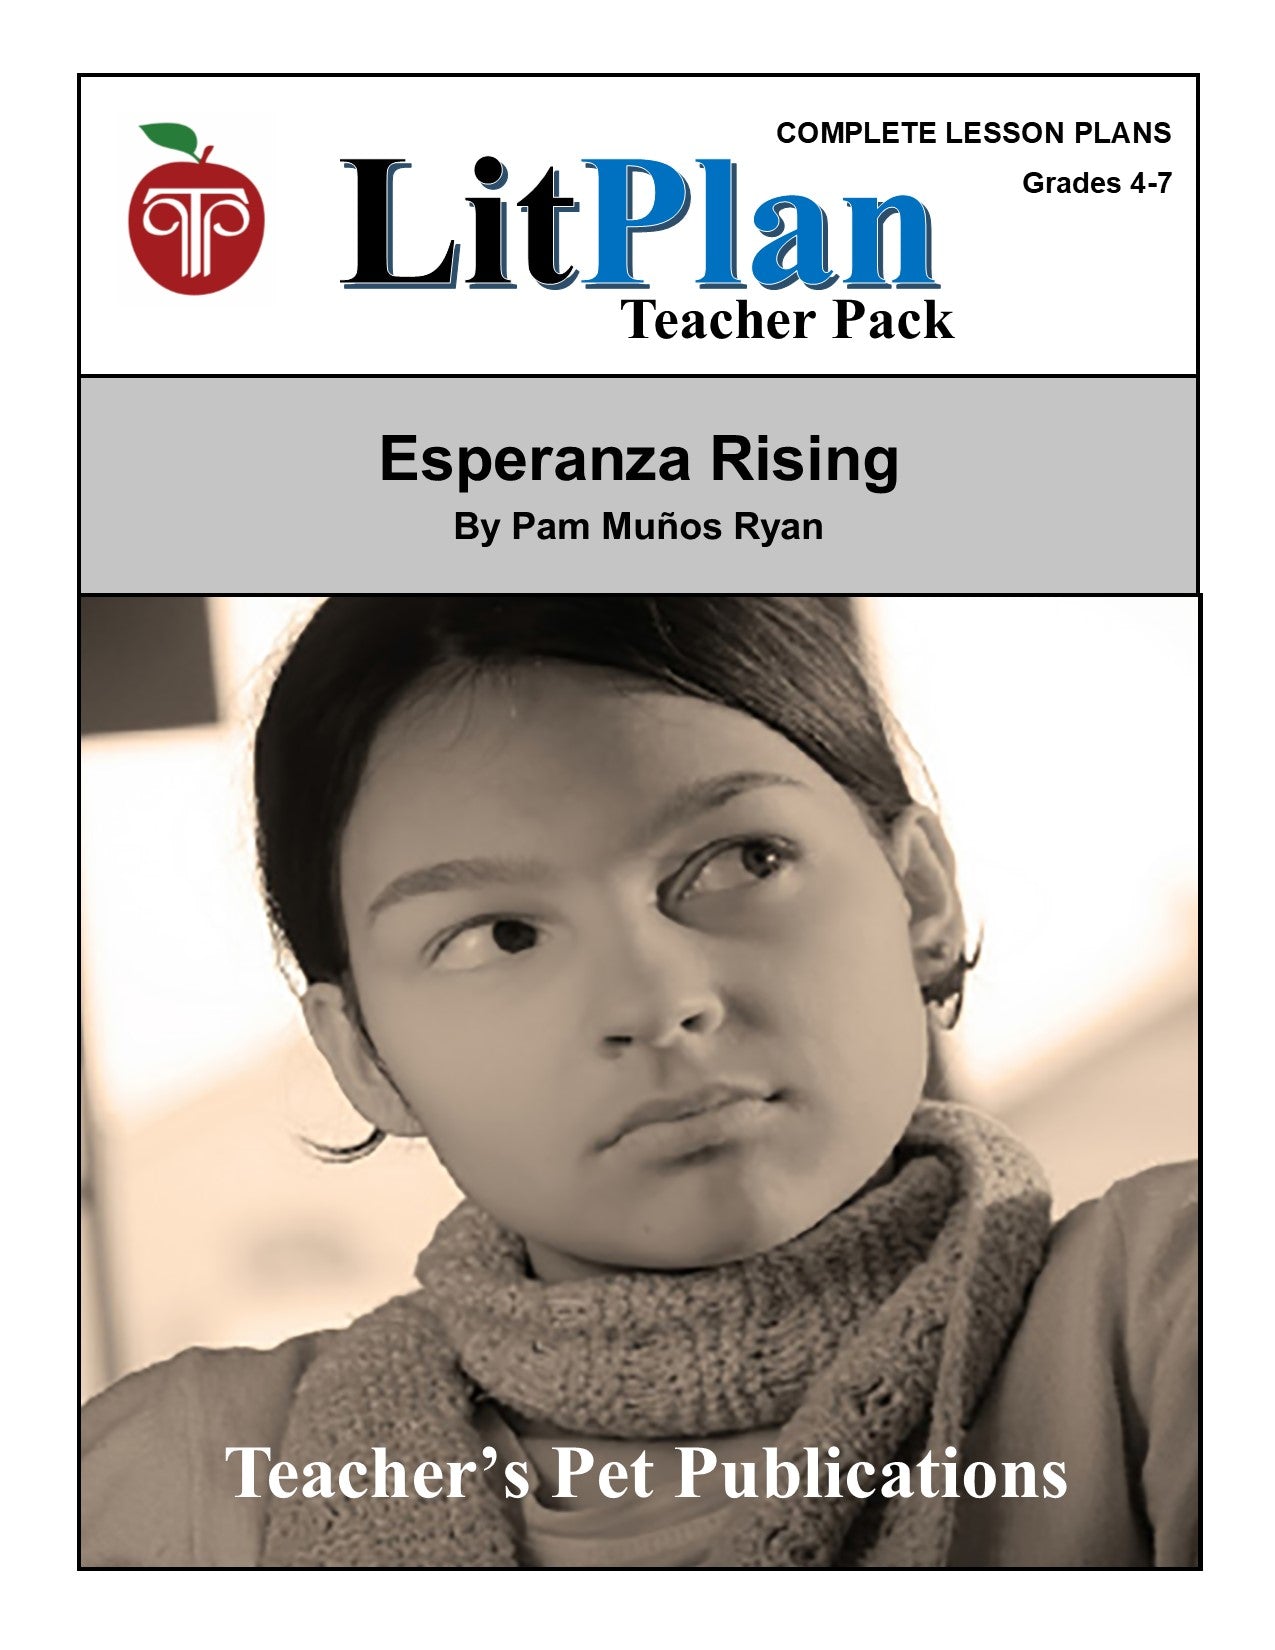 Esperanza Rising: LitPlan Teacher Pack Grades 4-7